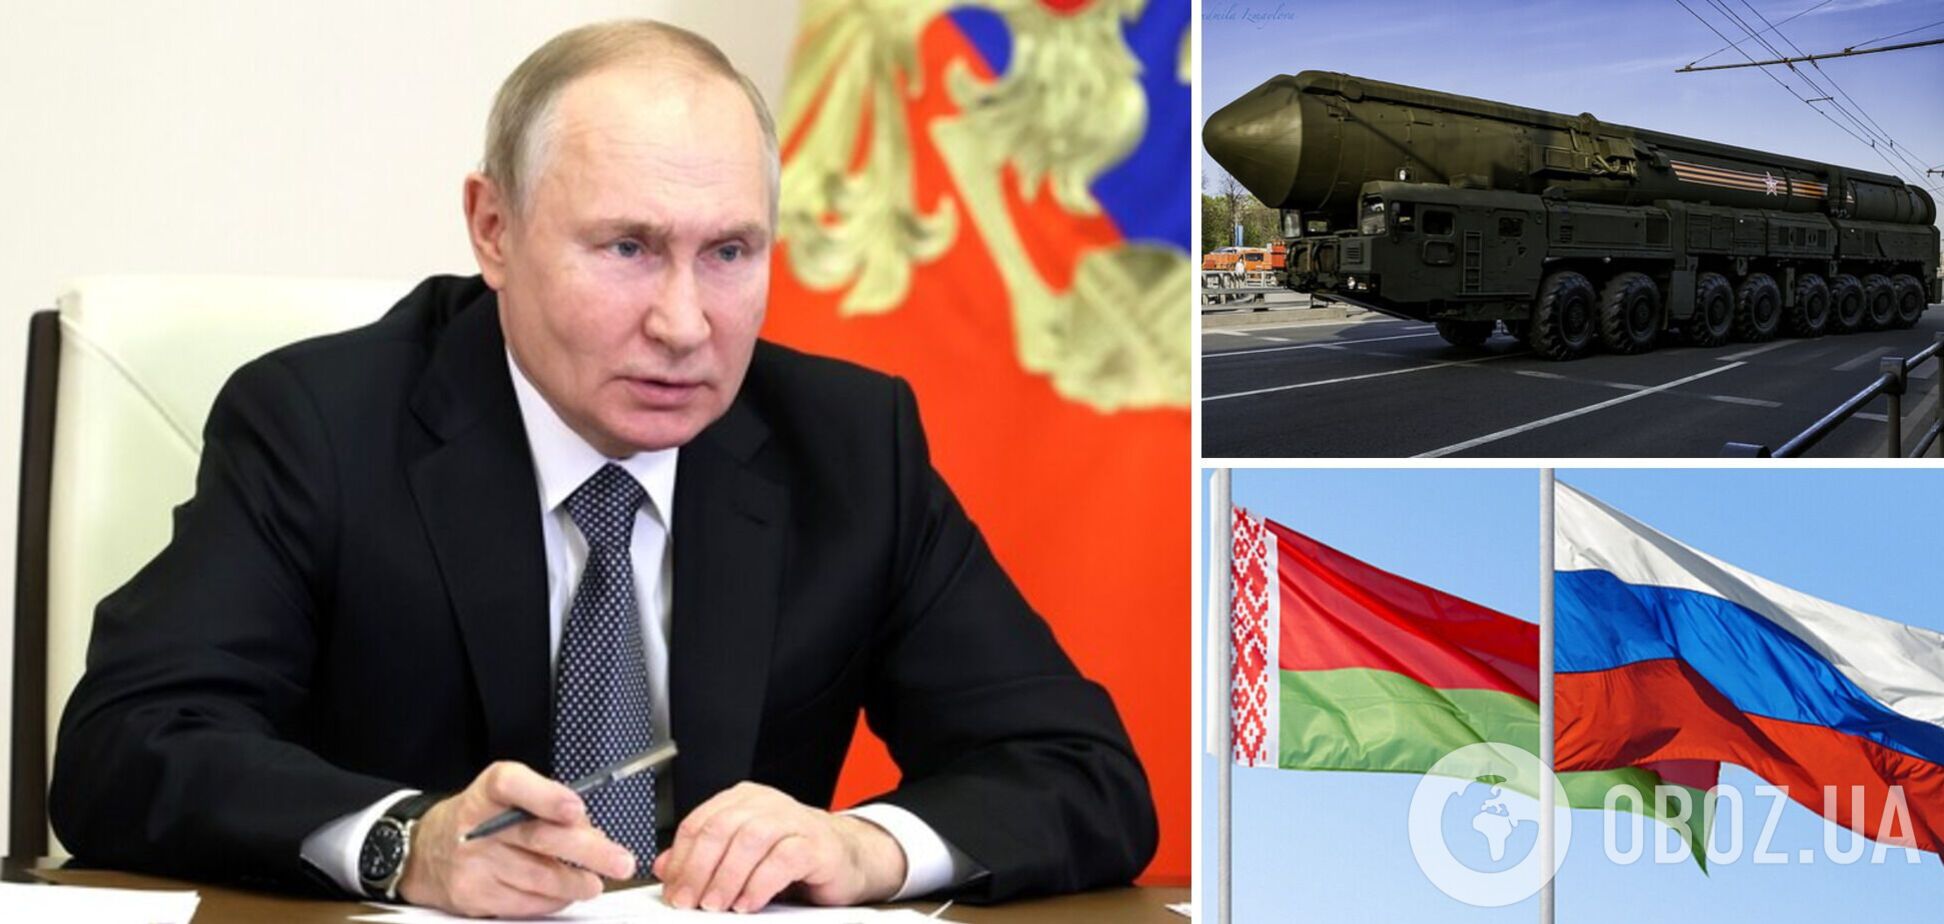 'Є чим відповісти!' Путін заявив про розміщення тактичної ядерної зброї на території Білорусі